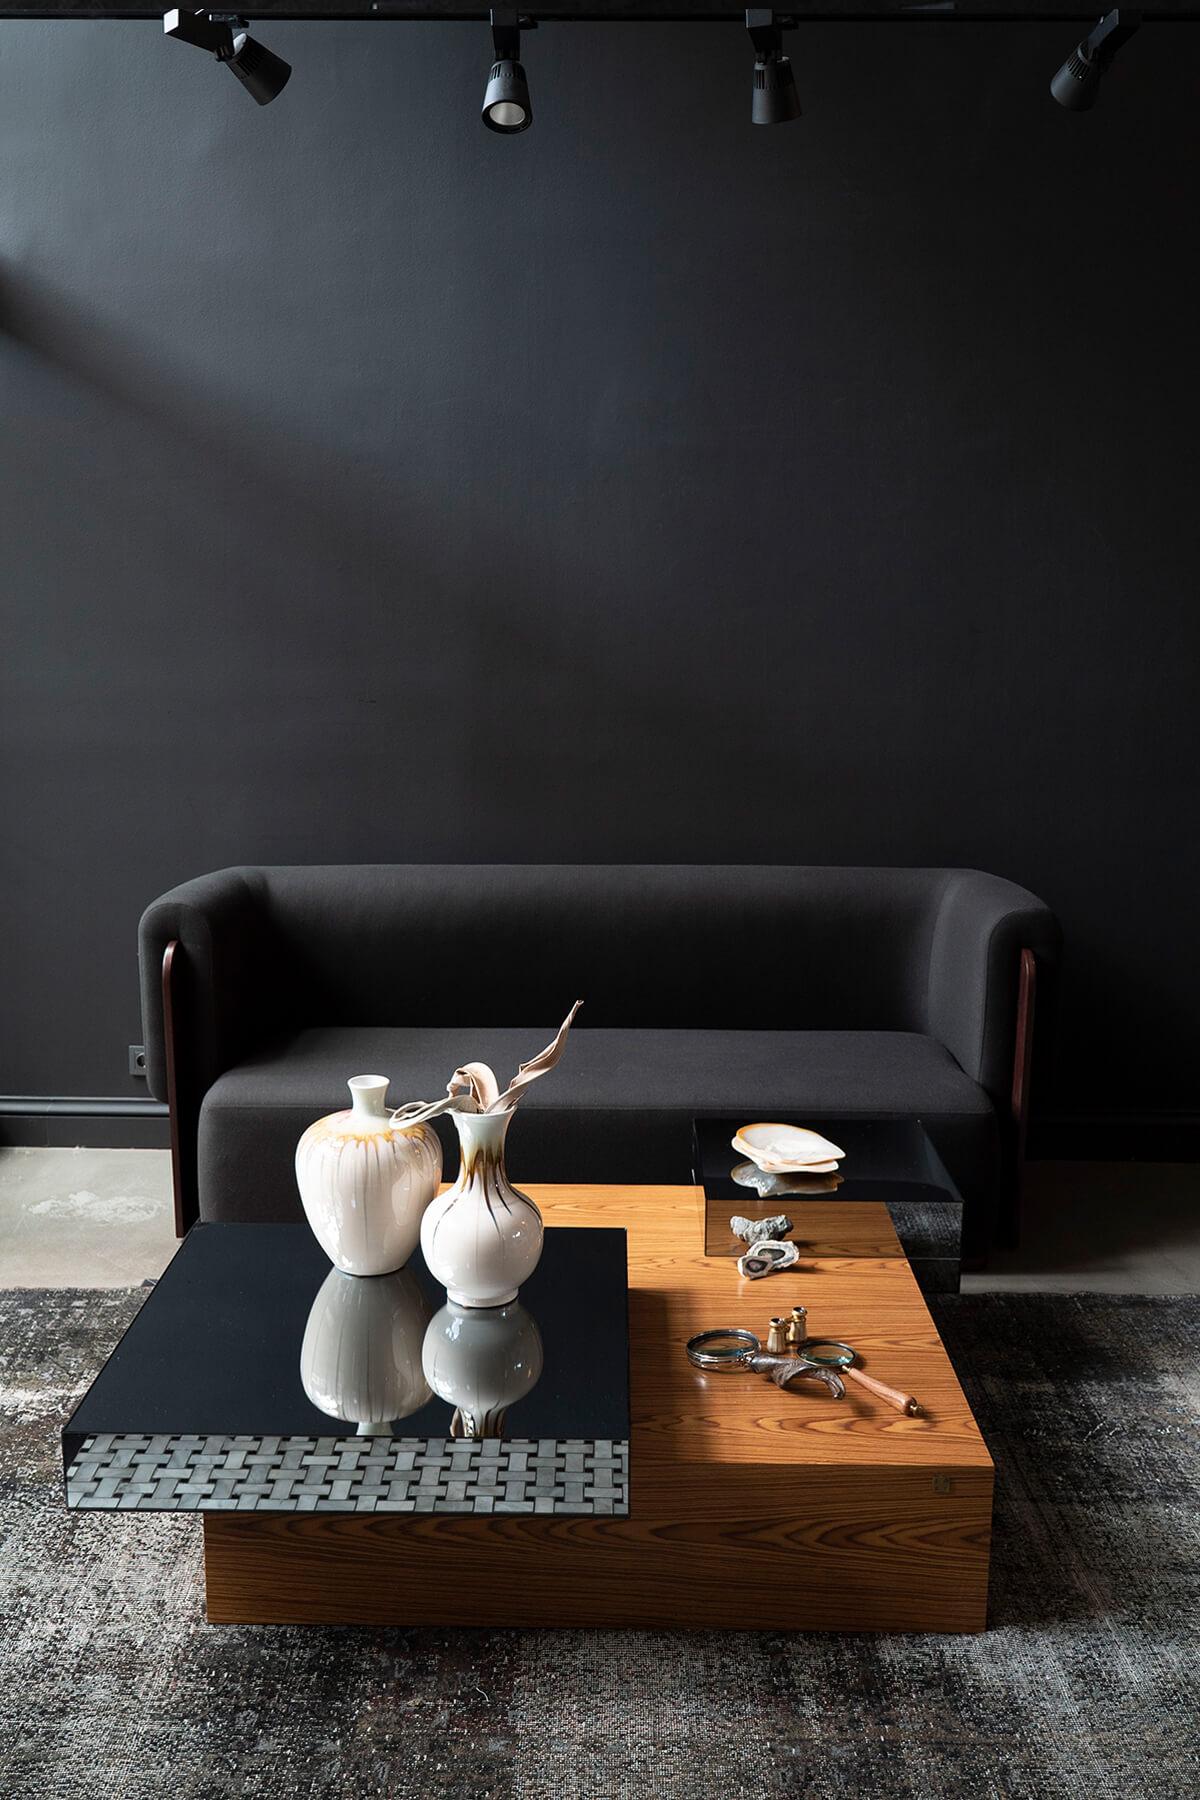 Der TUNÇ COFFEE TABLE ist ein Favorit der Fans geometrischer Formen und zieht durch die Verwendung verschiedener MATERIALIEN und Farbpaletten die Aufmerksamkeit auf sich. Sein Design, das ein Gefühl von Bewegung und Erkundung vermittelt, ist der